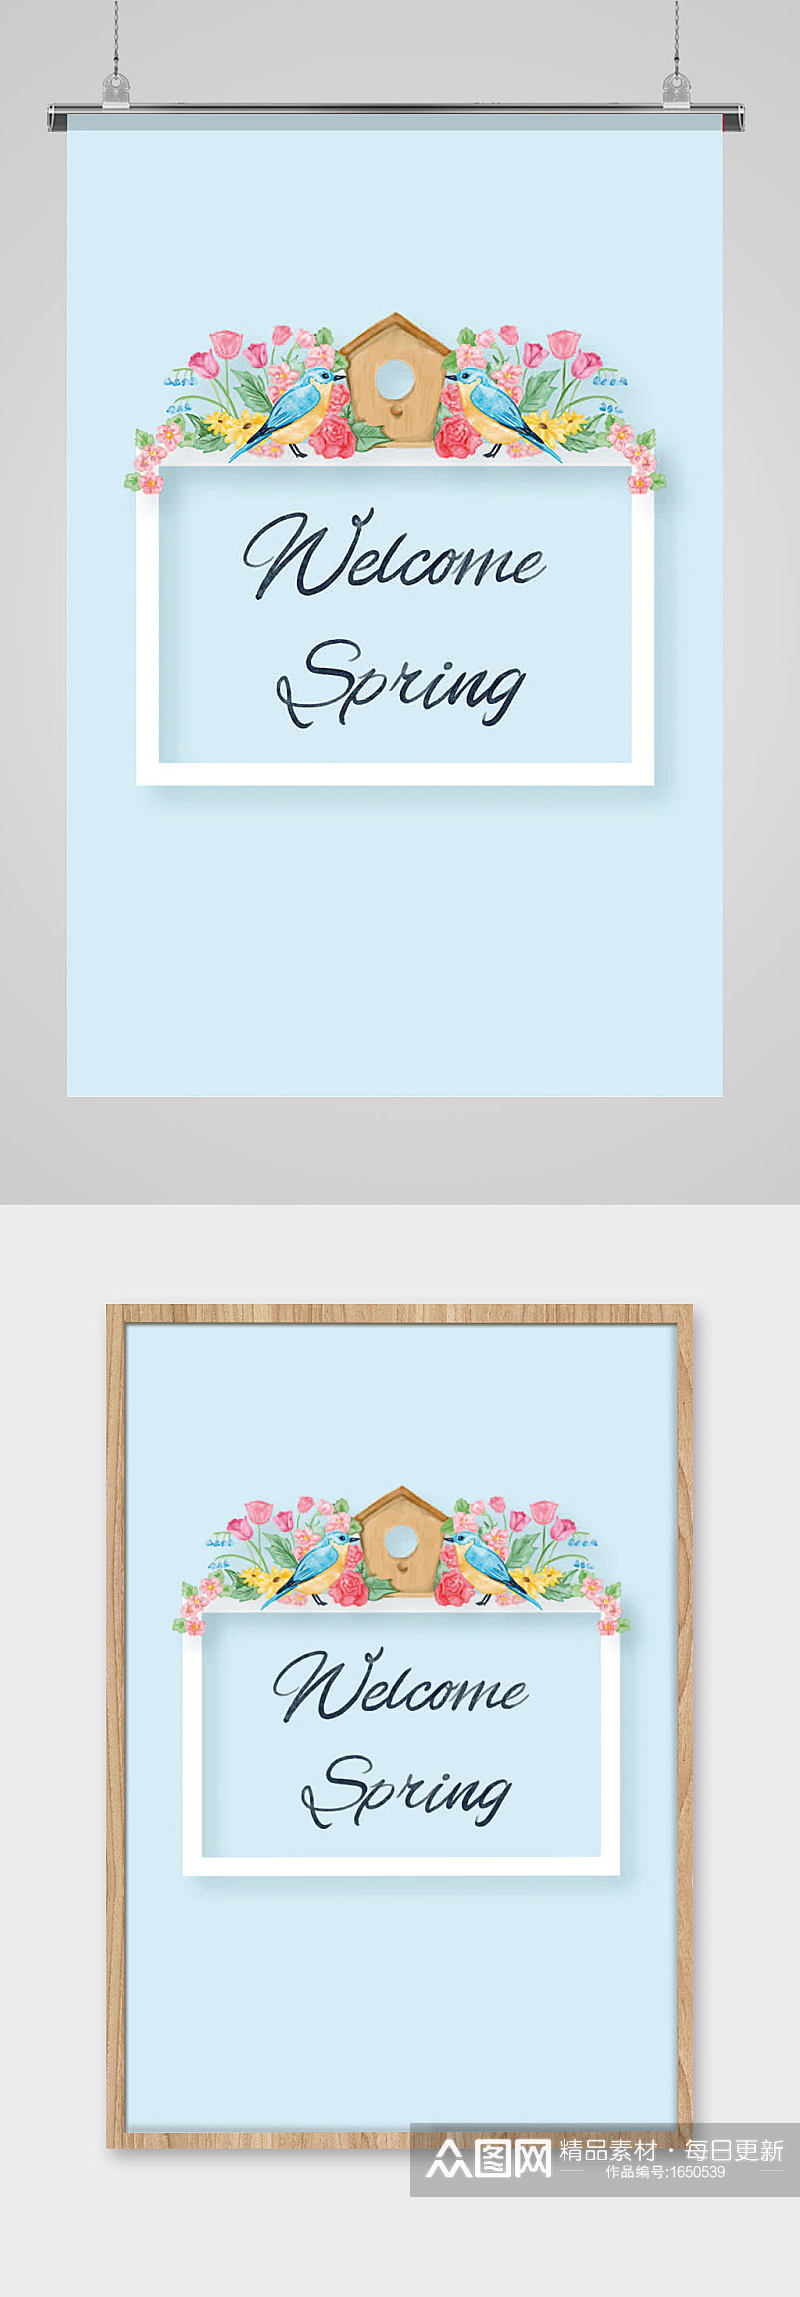 蓝色相框小鸟笼玫瑰花杜鹃喜鹊手绘卡通素材